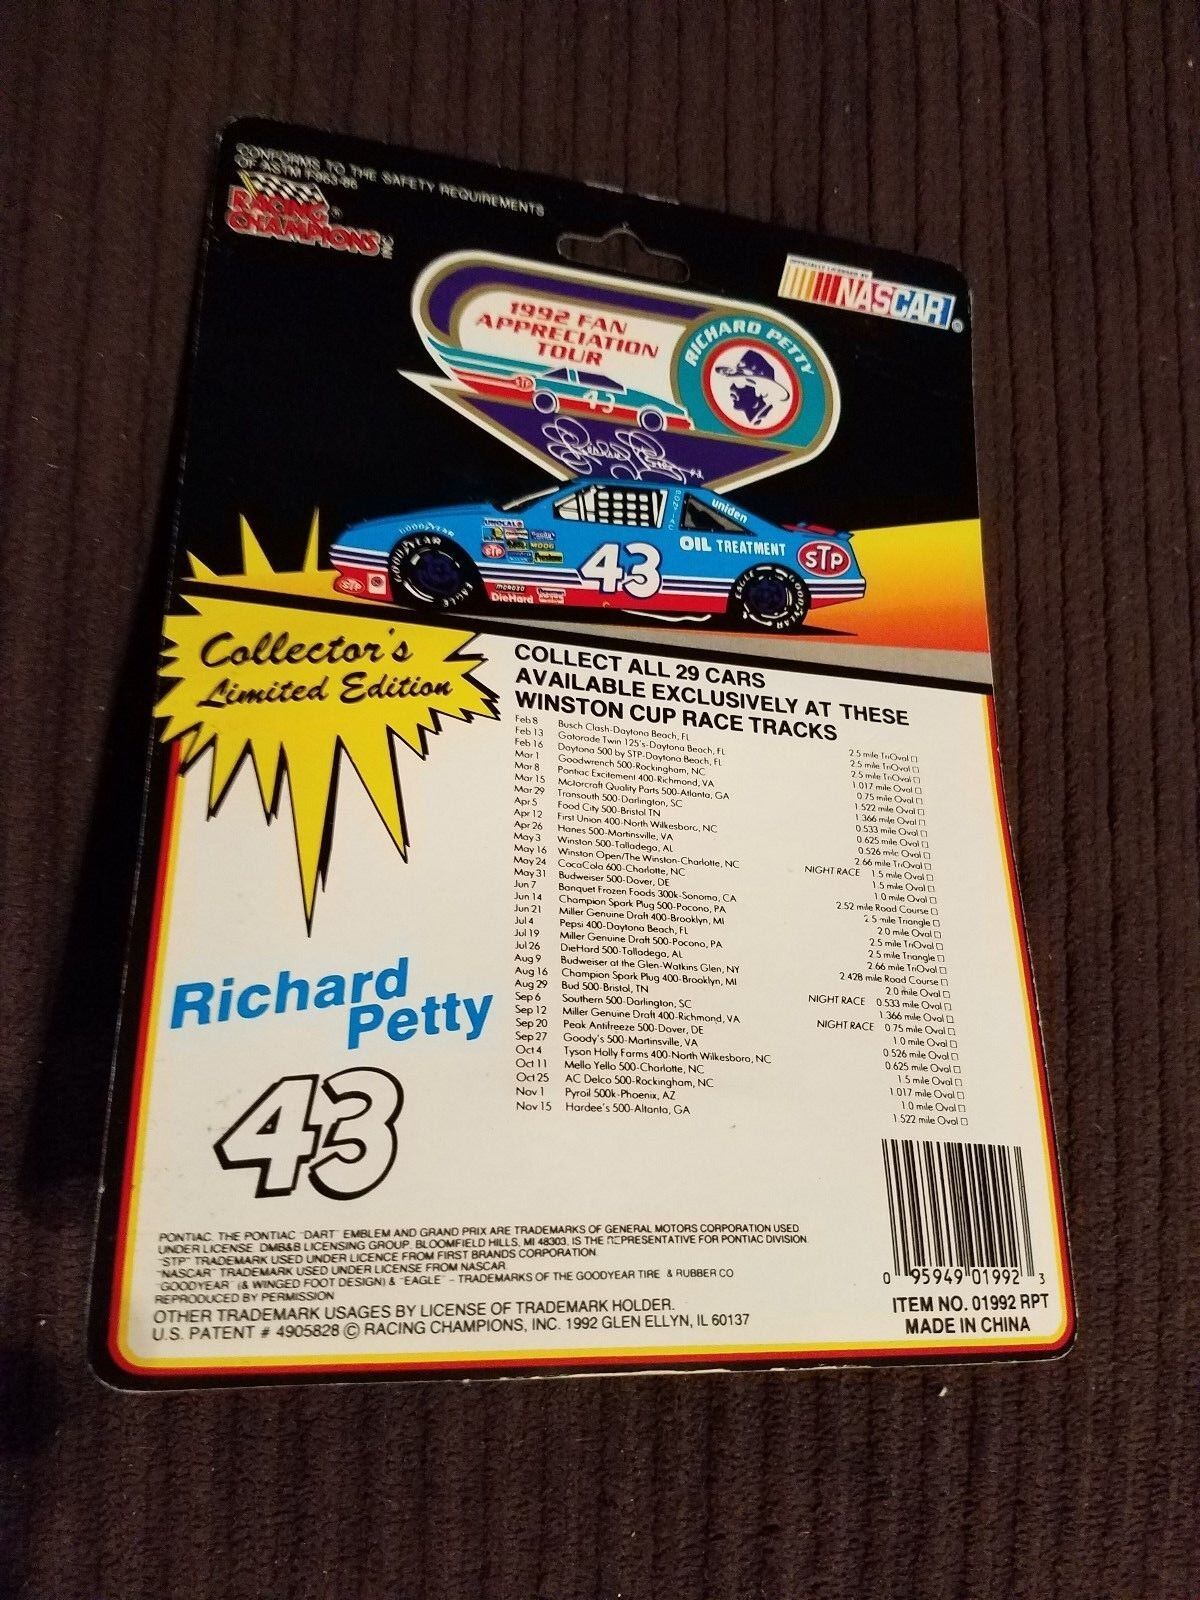 Richard Petty 43 September 12 1992 Fan Tour Richmond International Speedway